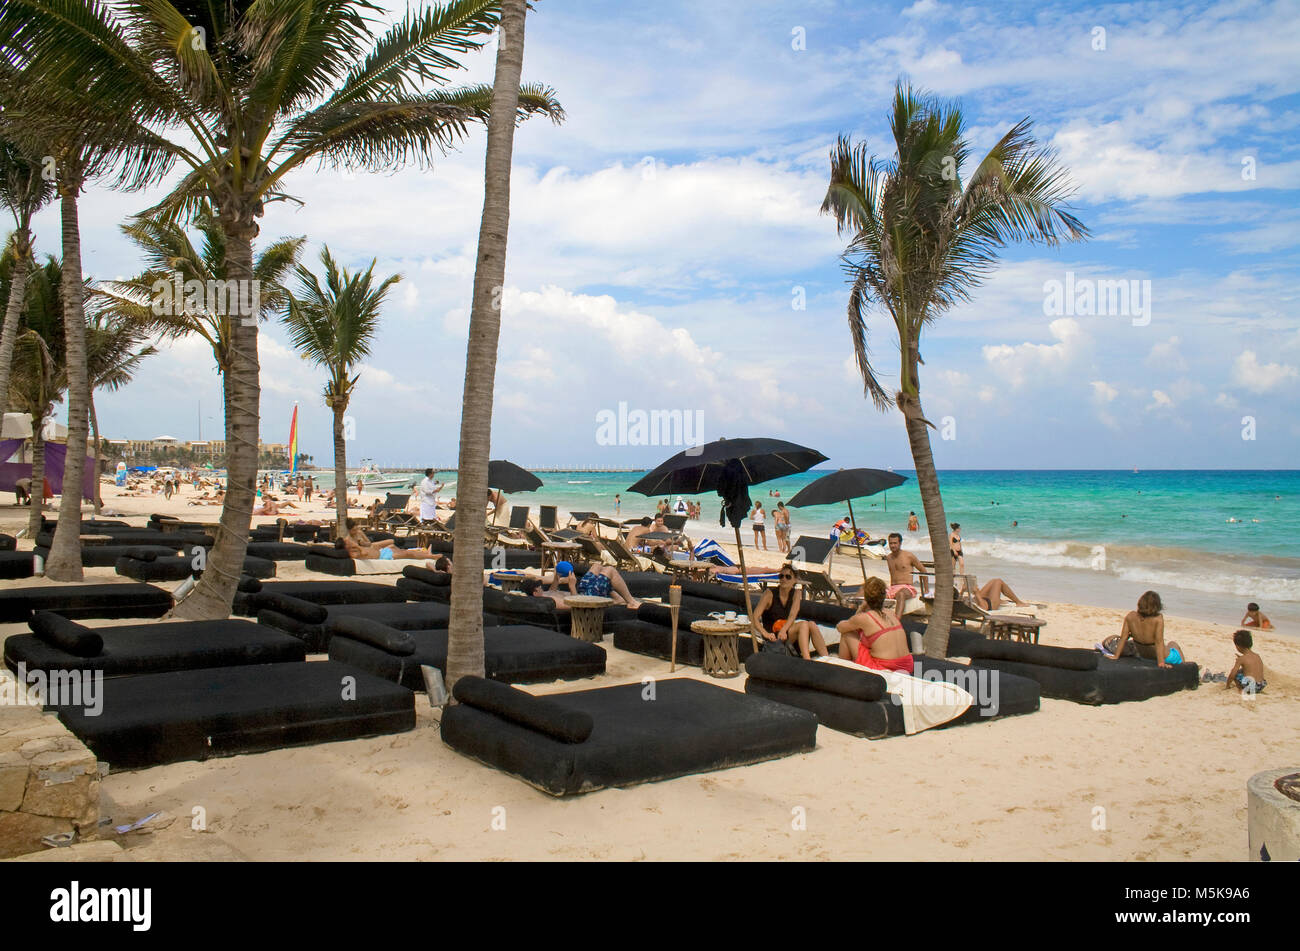 Komfortable Strandliegen am Strand von Playa del Carmen, Mexiko, Karibik | cómodas tumbonas en la playa de Playa del Carmen, México, el Caribe Foto de stock